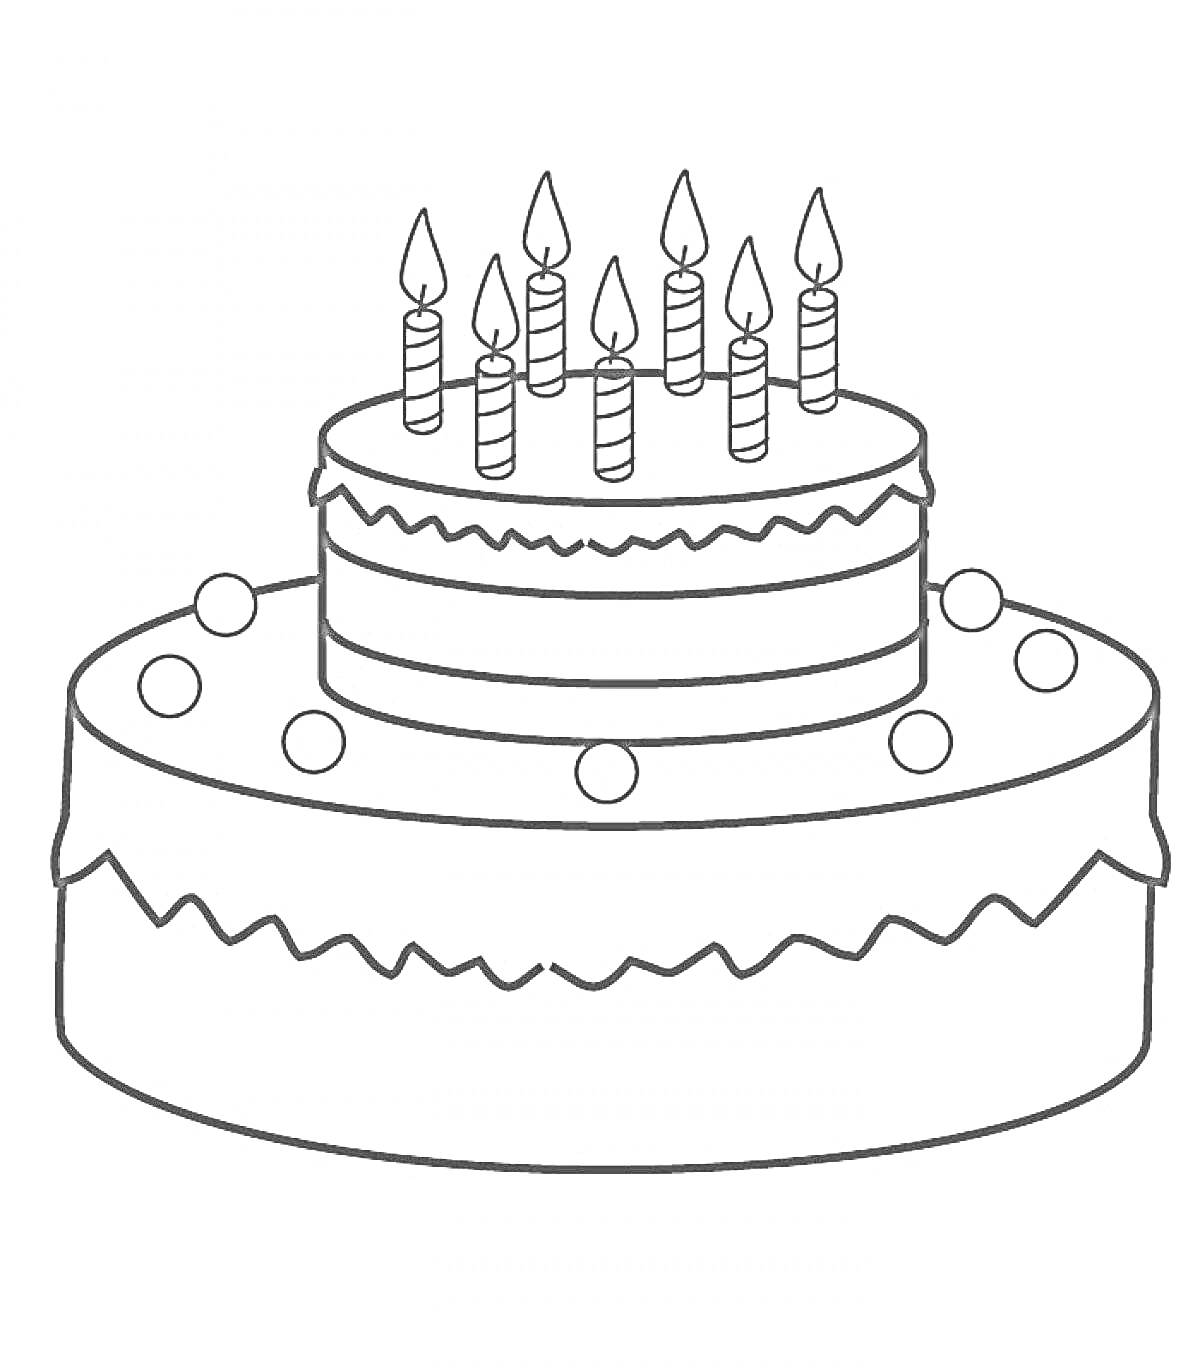 Раскраска Двухъярусный торт с семью свечами и шариками украшения